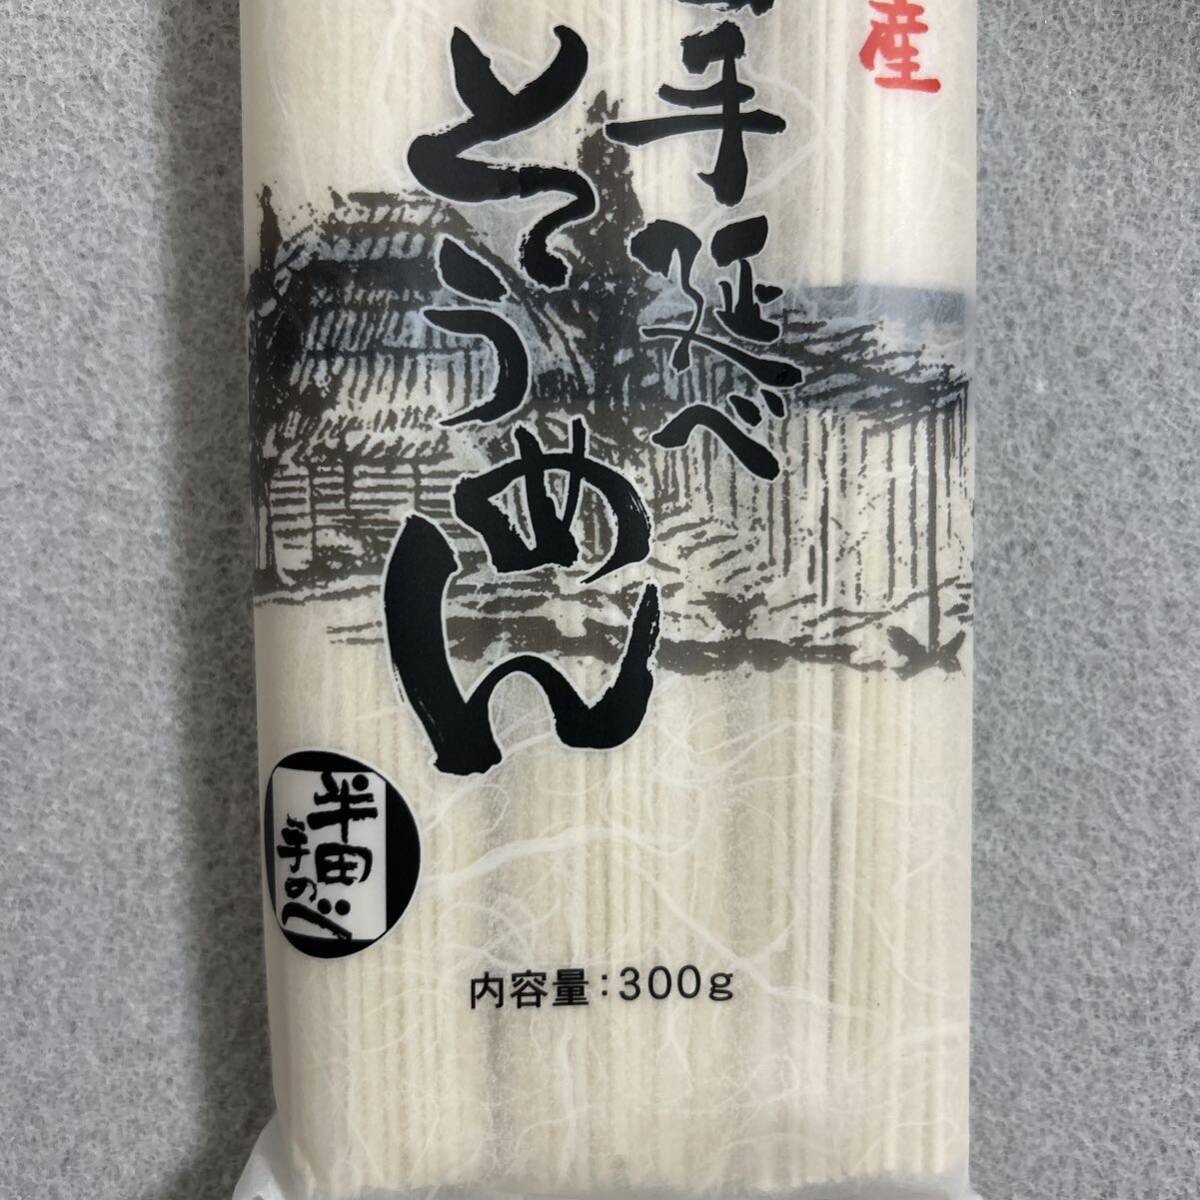  Tokushima название производство половина рисовое поле рука .. вермишель 300g×3 пакет комплект половина рисовое поле элемент лапша 